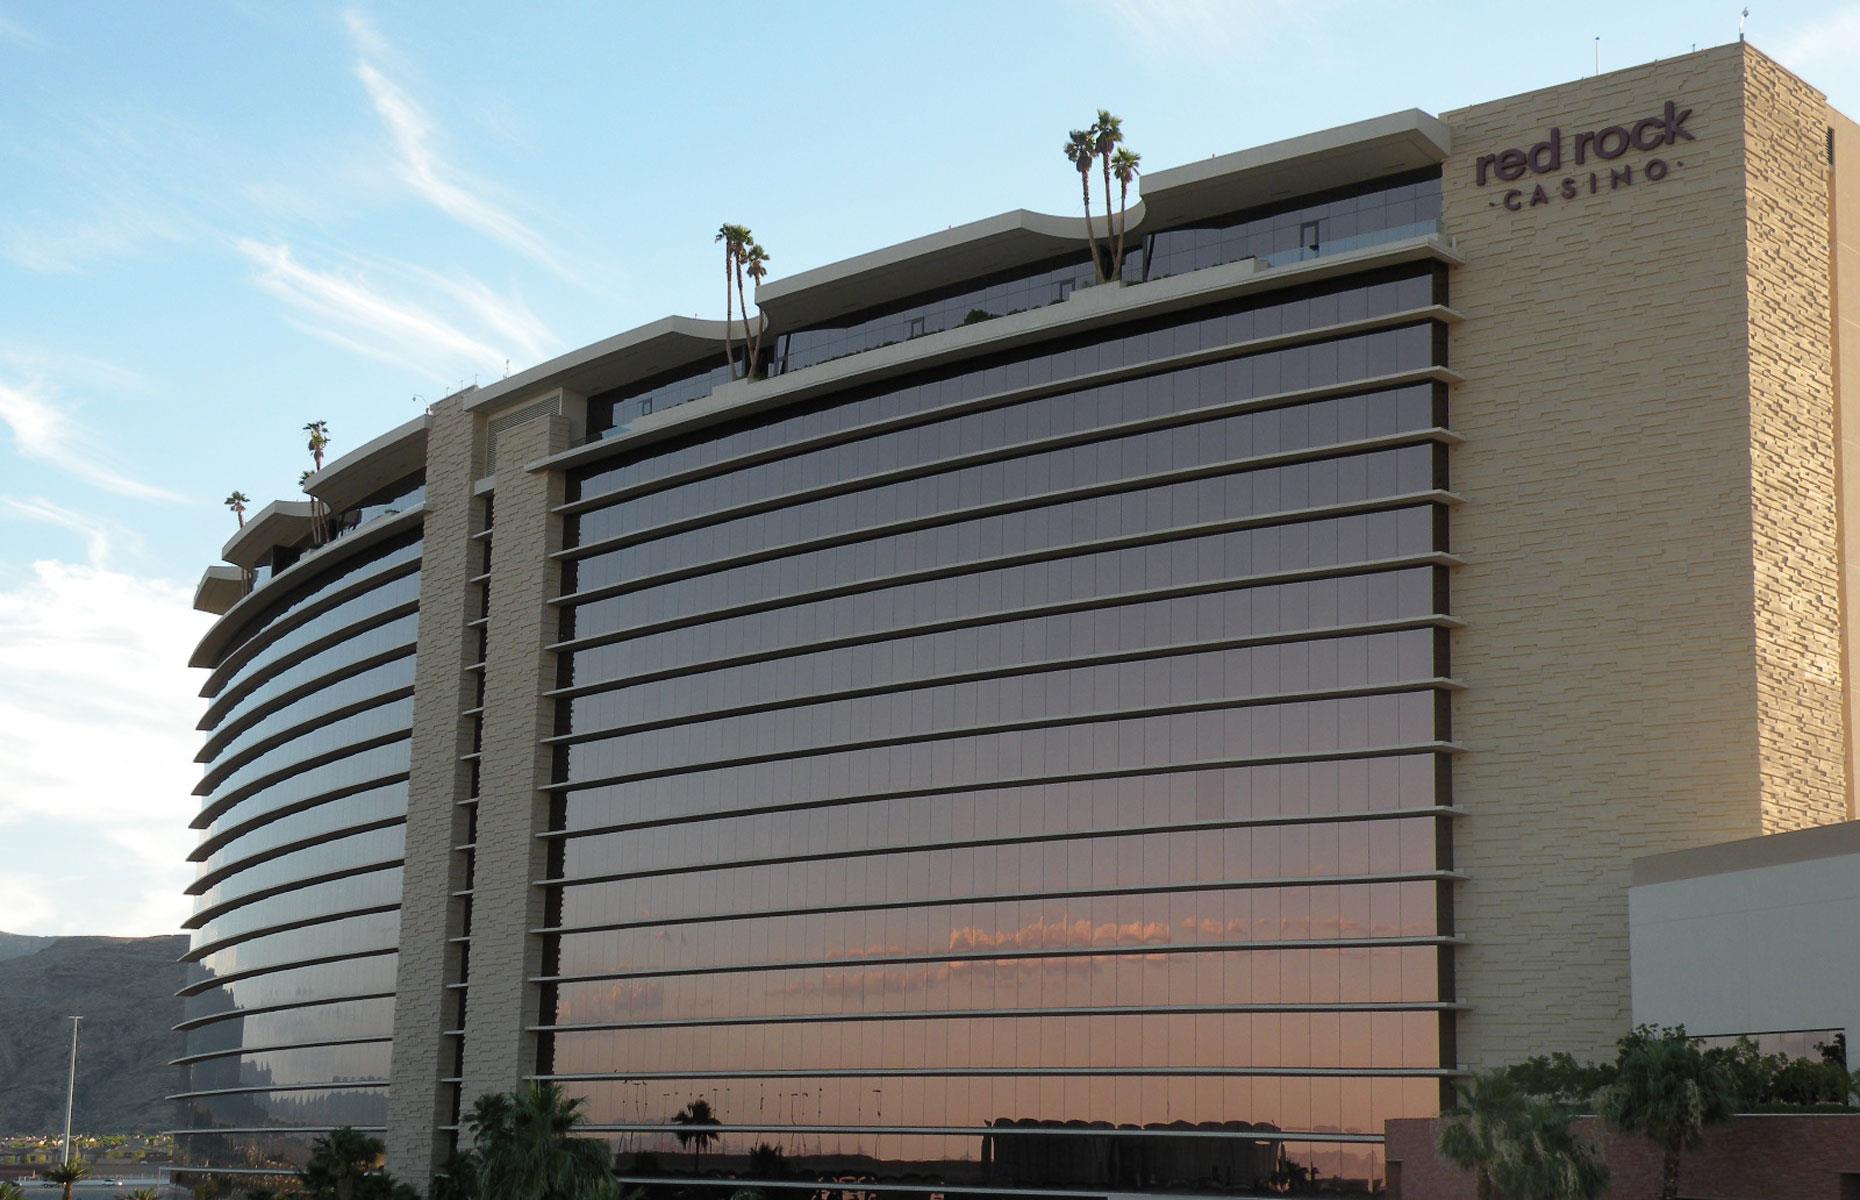 18. Red Rock Casino Resort & Spa, Las Vegas: $1.35 billion